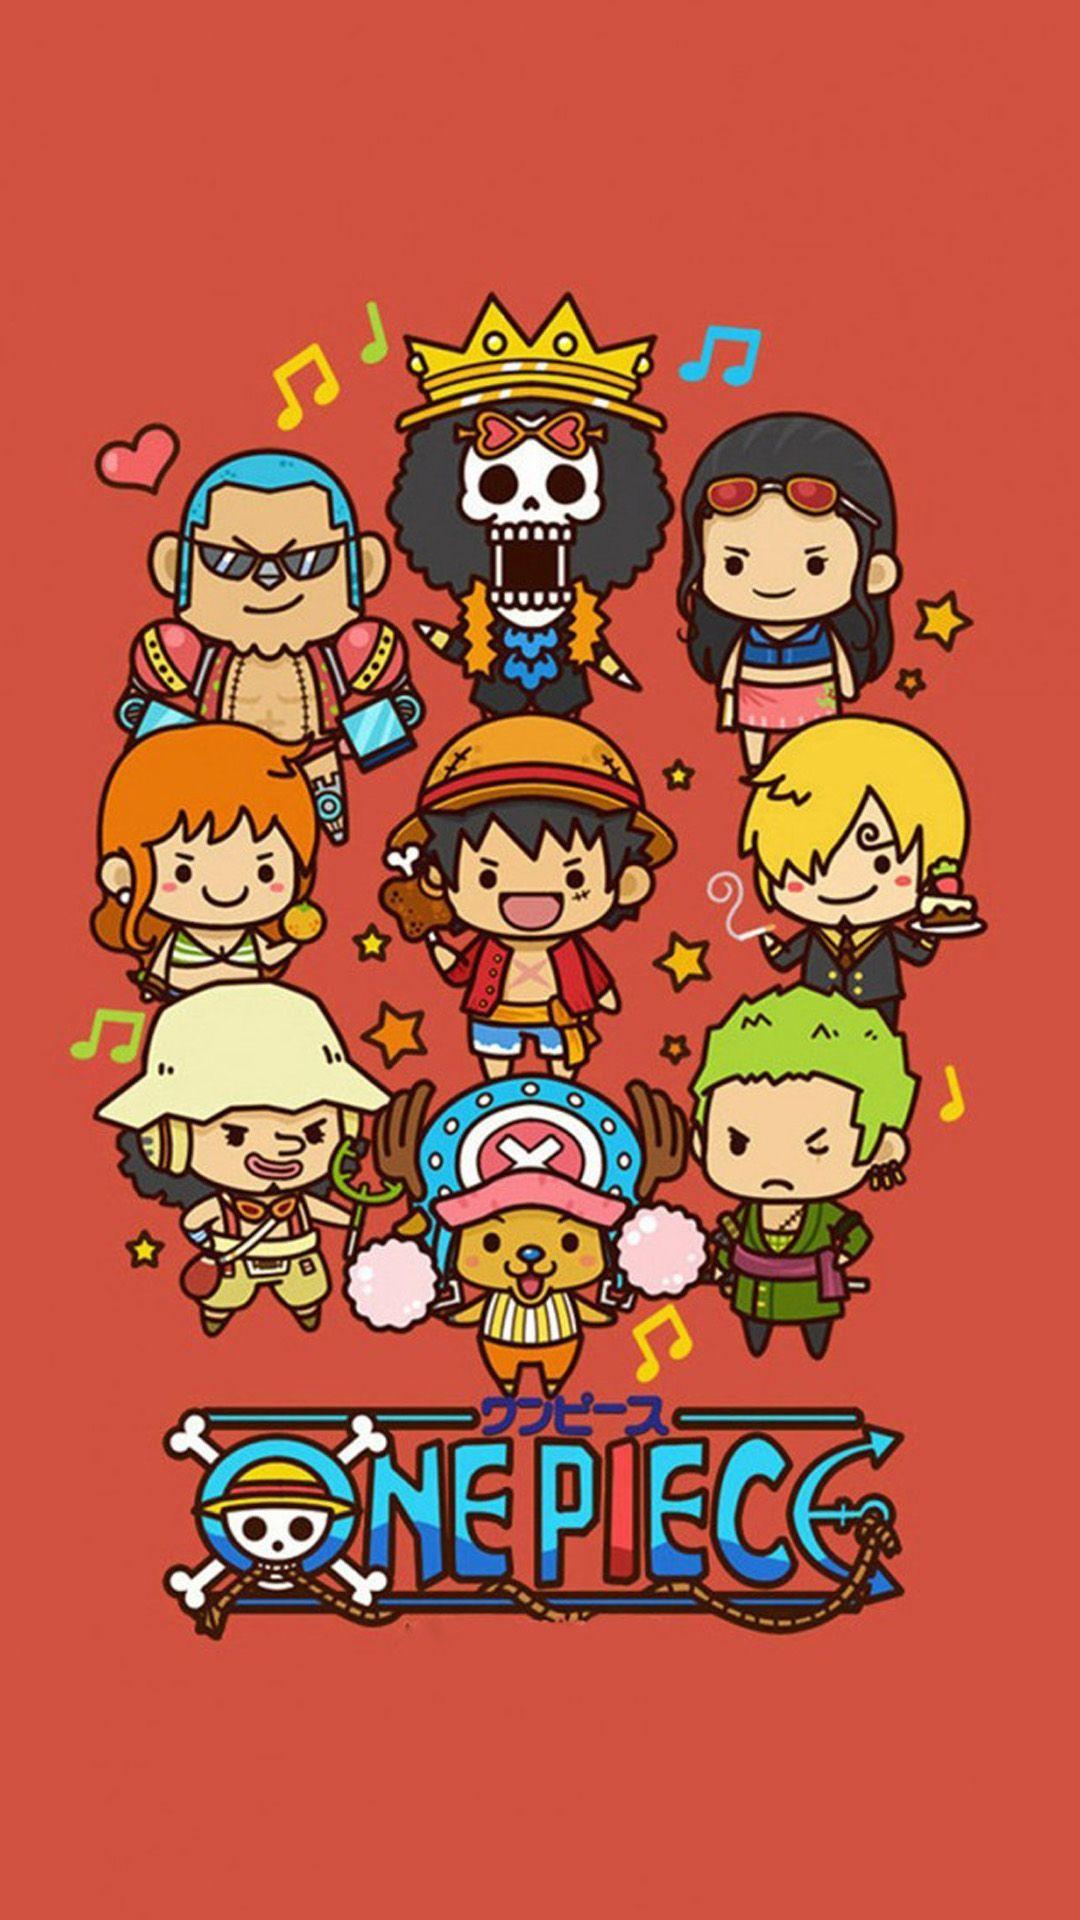 Cute Lovely One Piece Cartoon Poster iPhone 6 wallpaper. jm